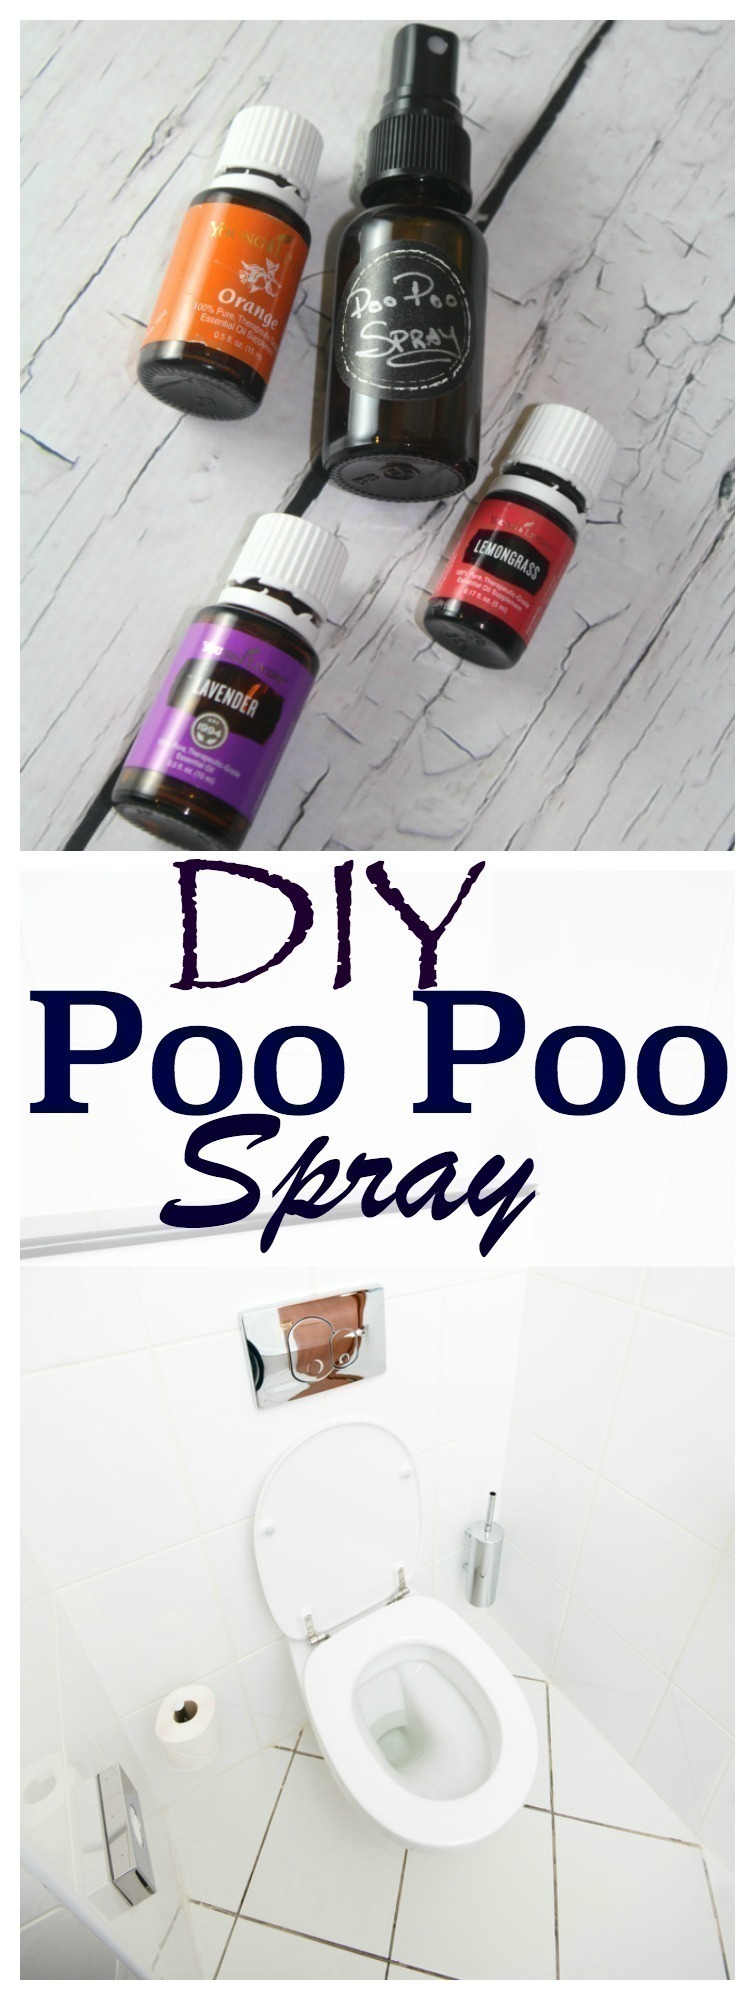 DIY Poo Poo Spray